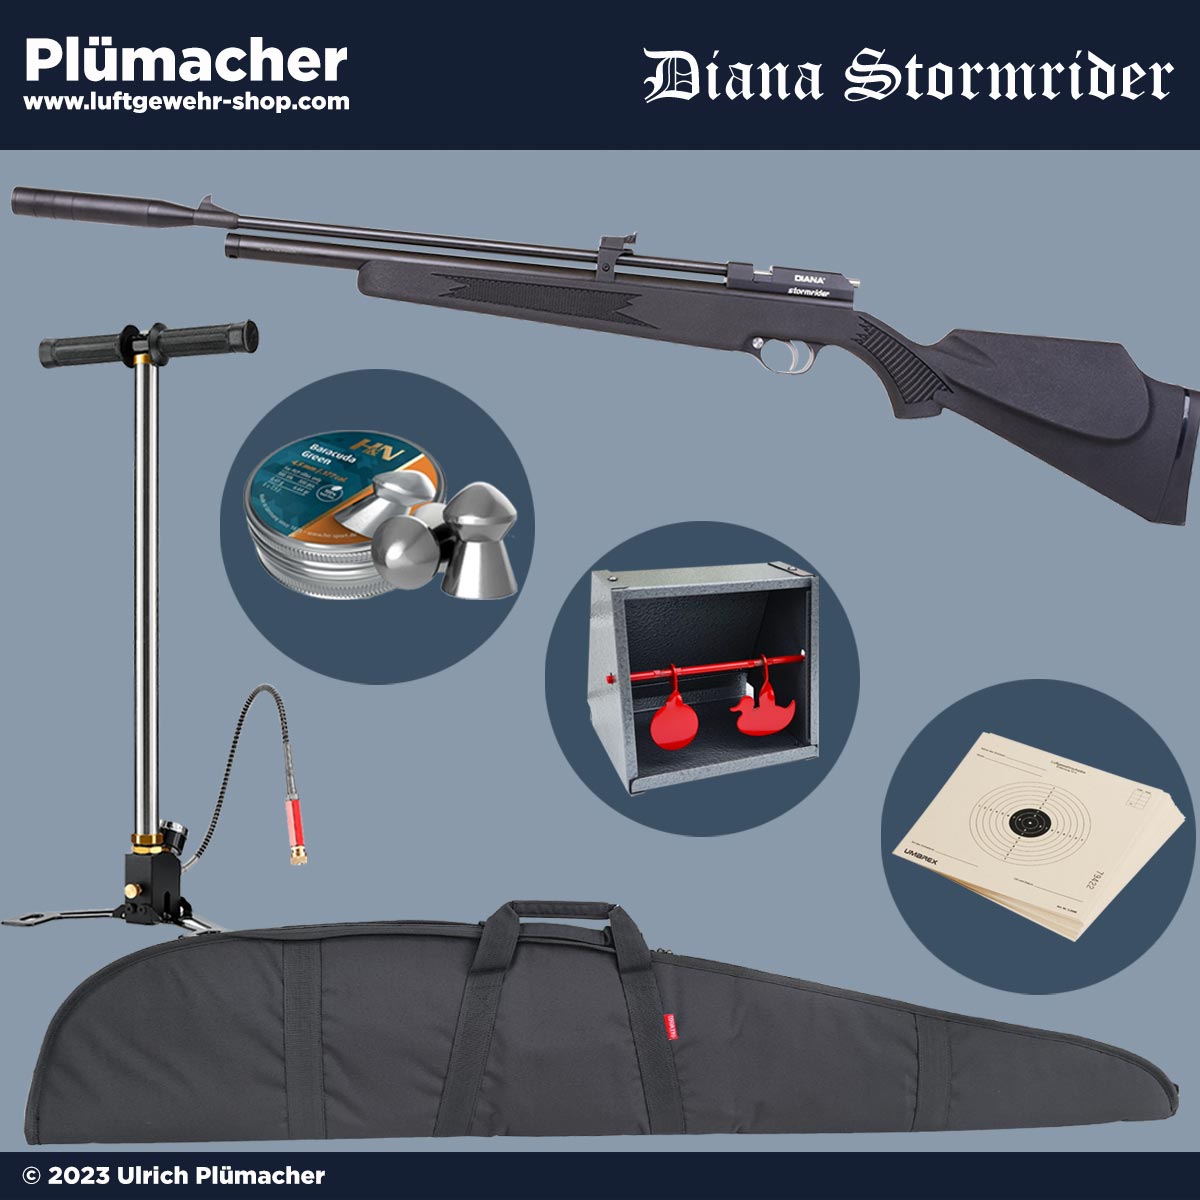 Diana Stormrider black Luftgewehr Set - Pressluftgewehr 4,5 mm.  Luftgewehr-Shop - Luftgewehre, Schreckschusswaffen, CO2 Waffen,  Luftpistolen kaufen